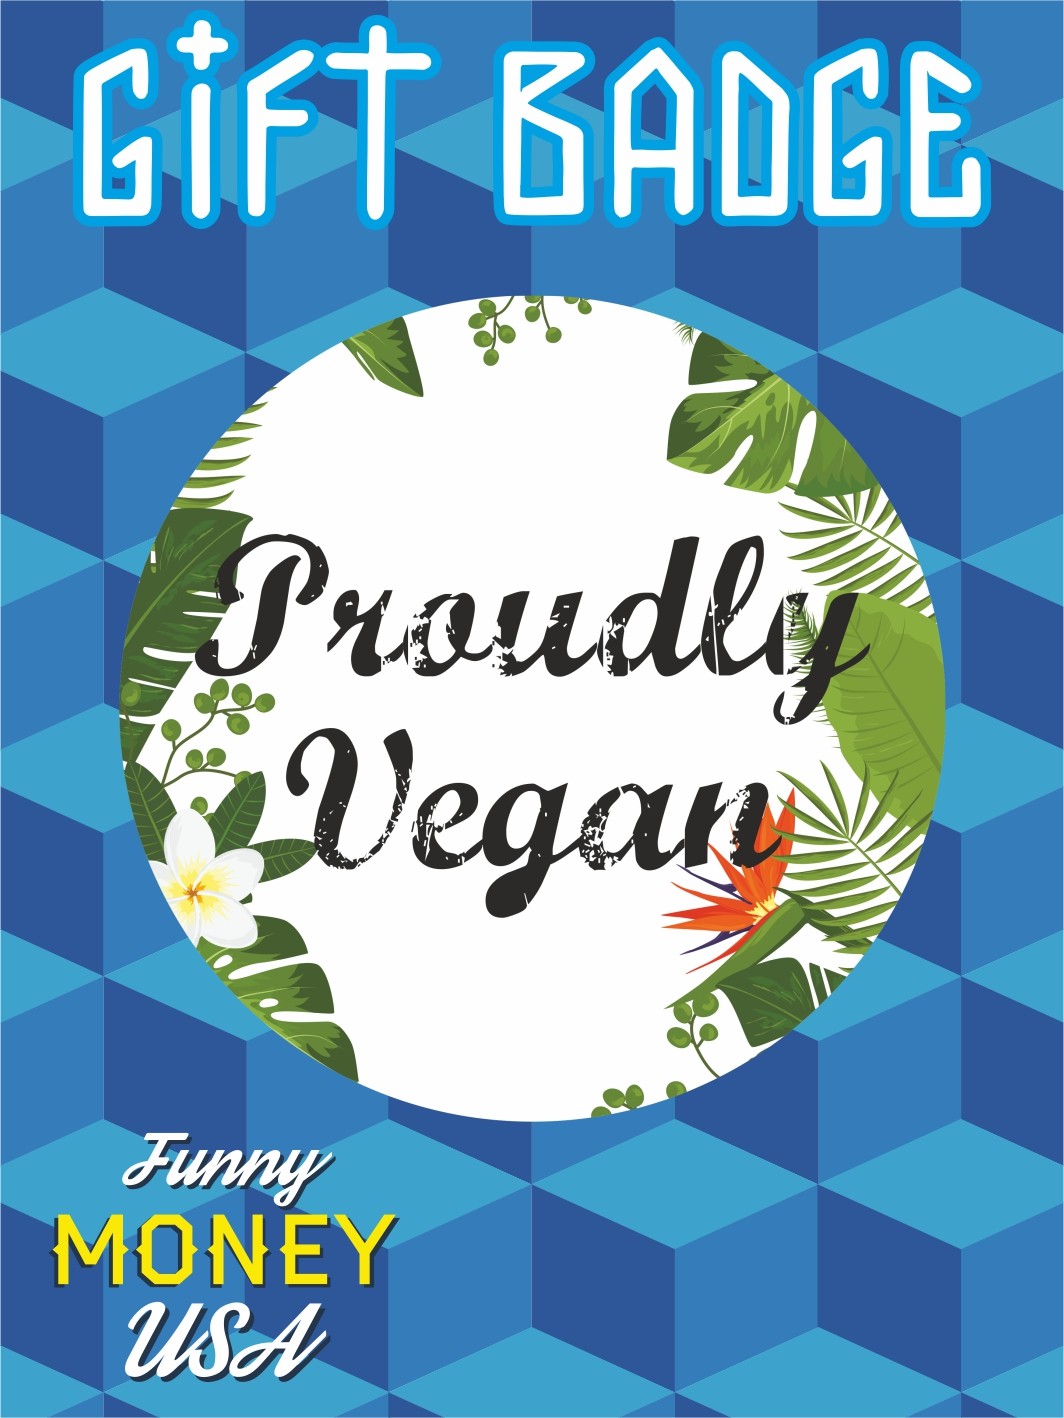 Gift badges "Proudly Vegan"